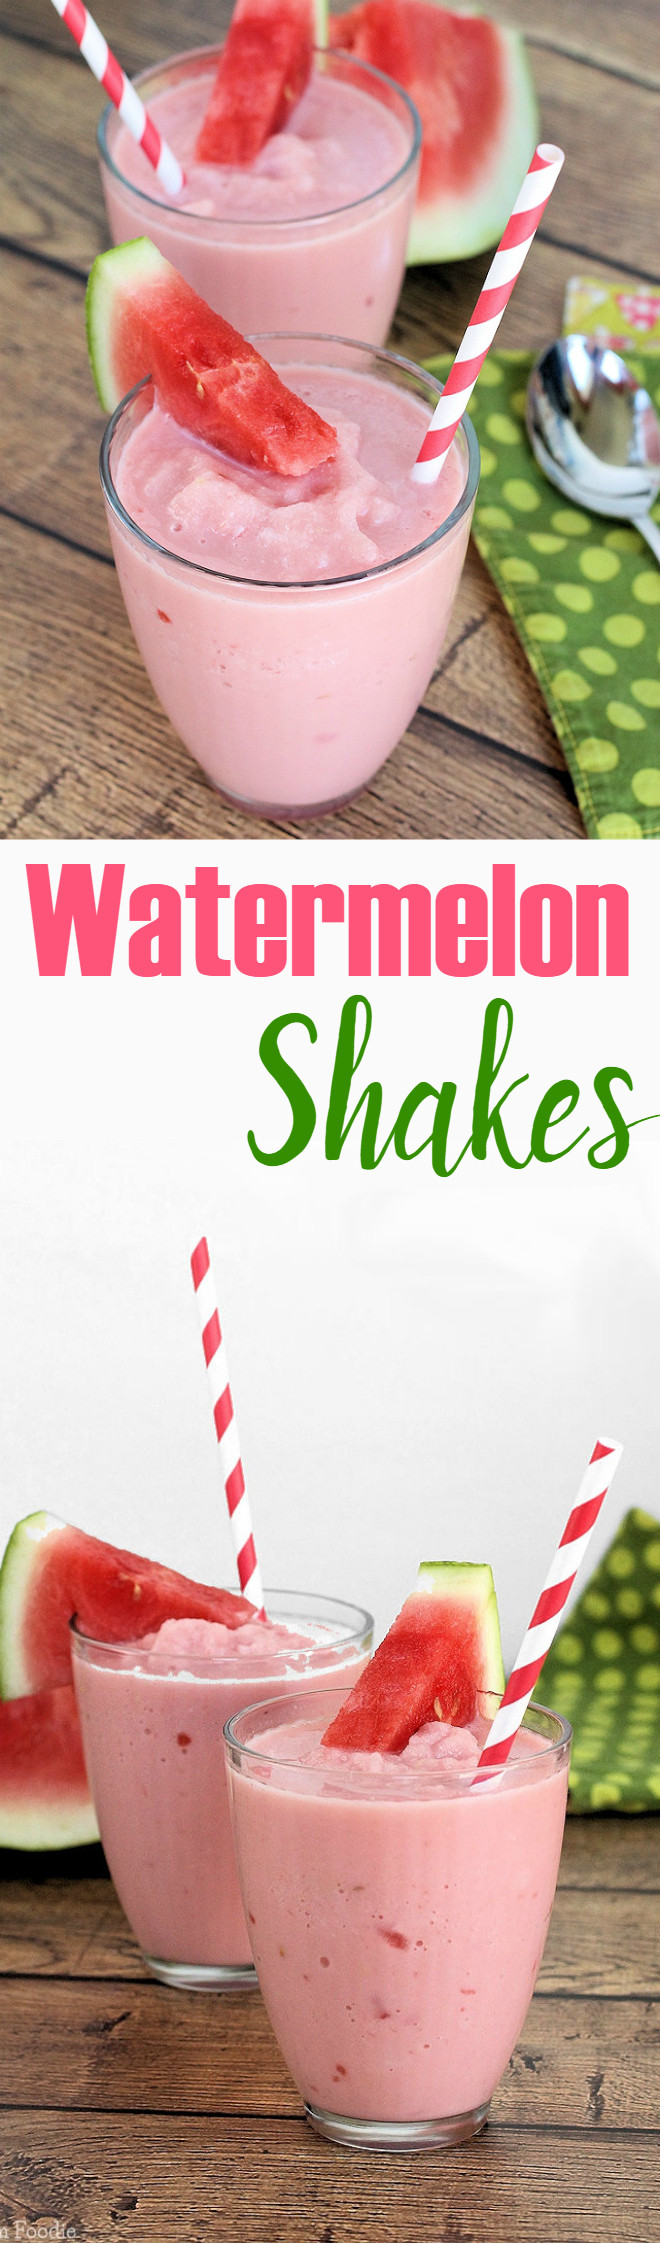 Non Dairy Smoothie Recipes
 Watermelon Milk Shakes non dairy vegan